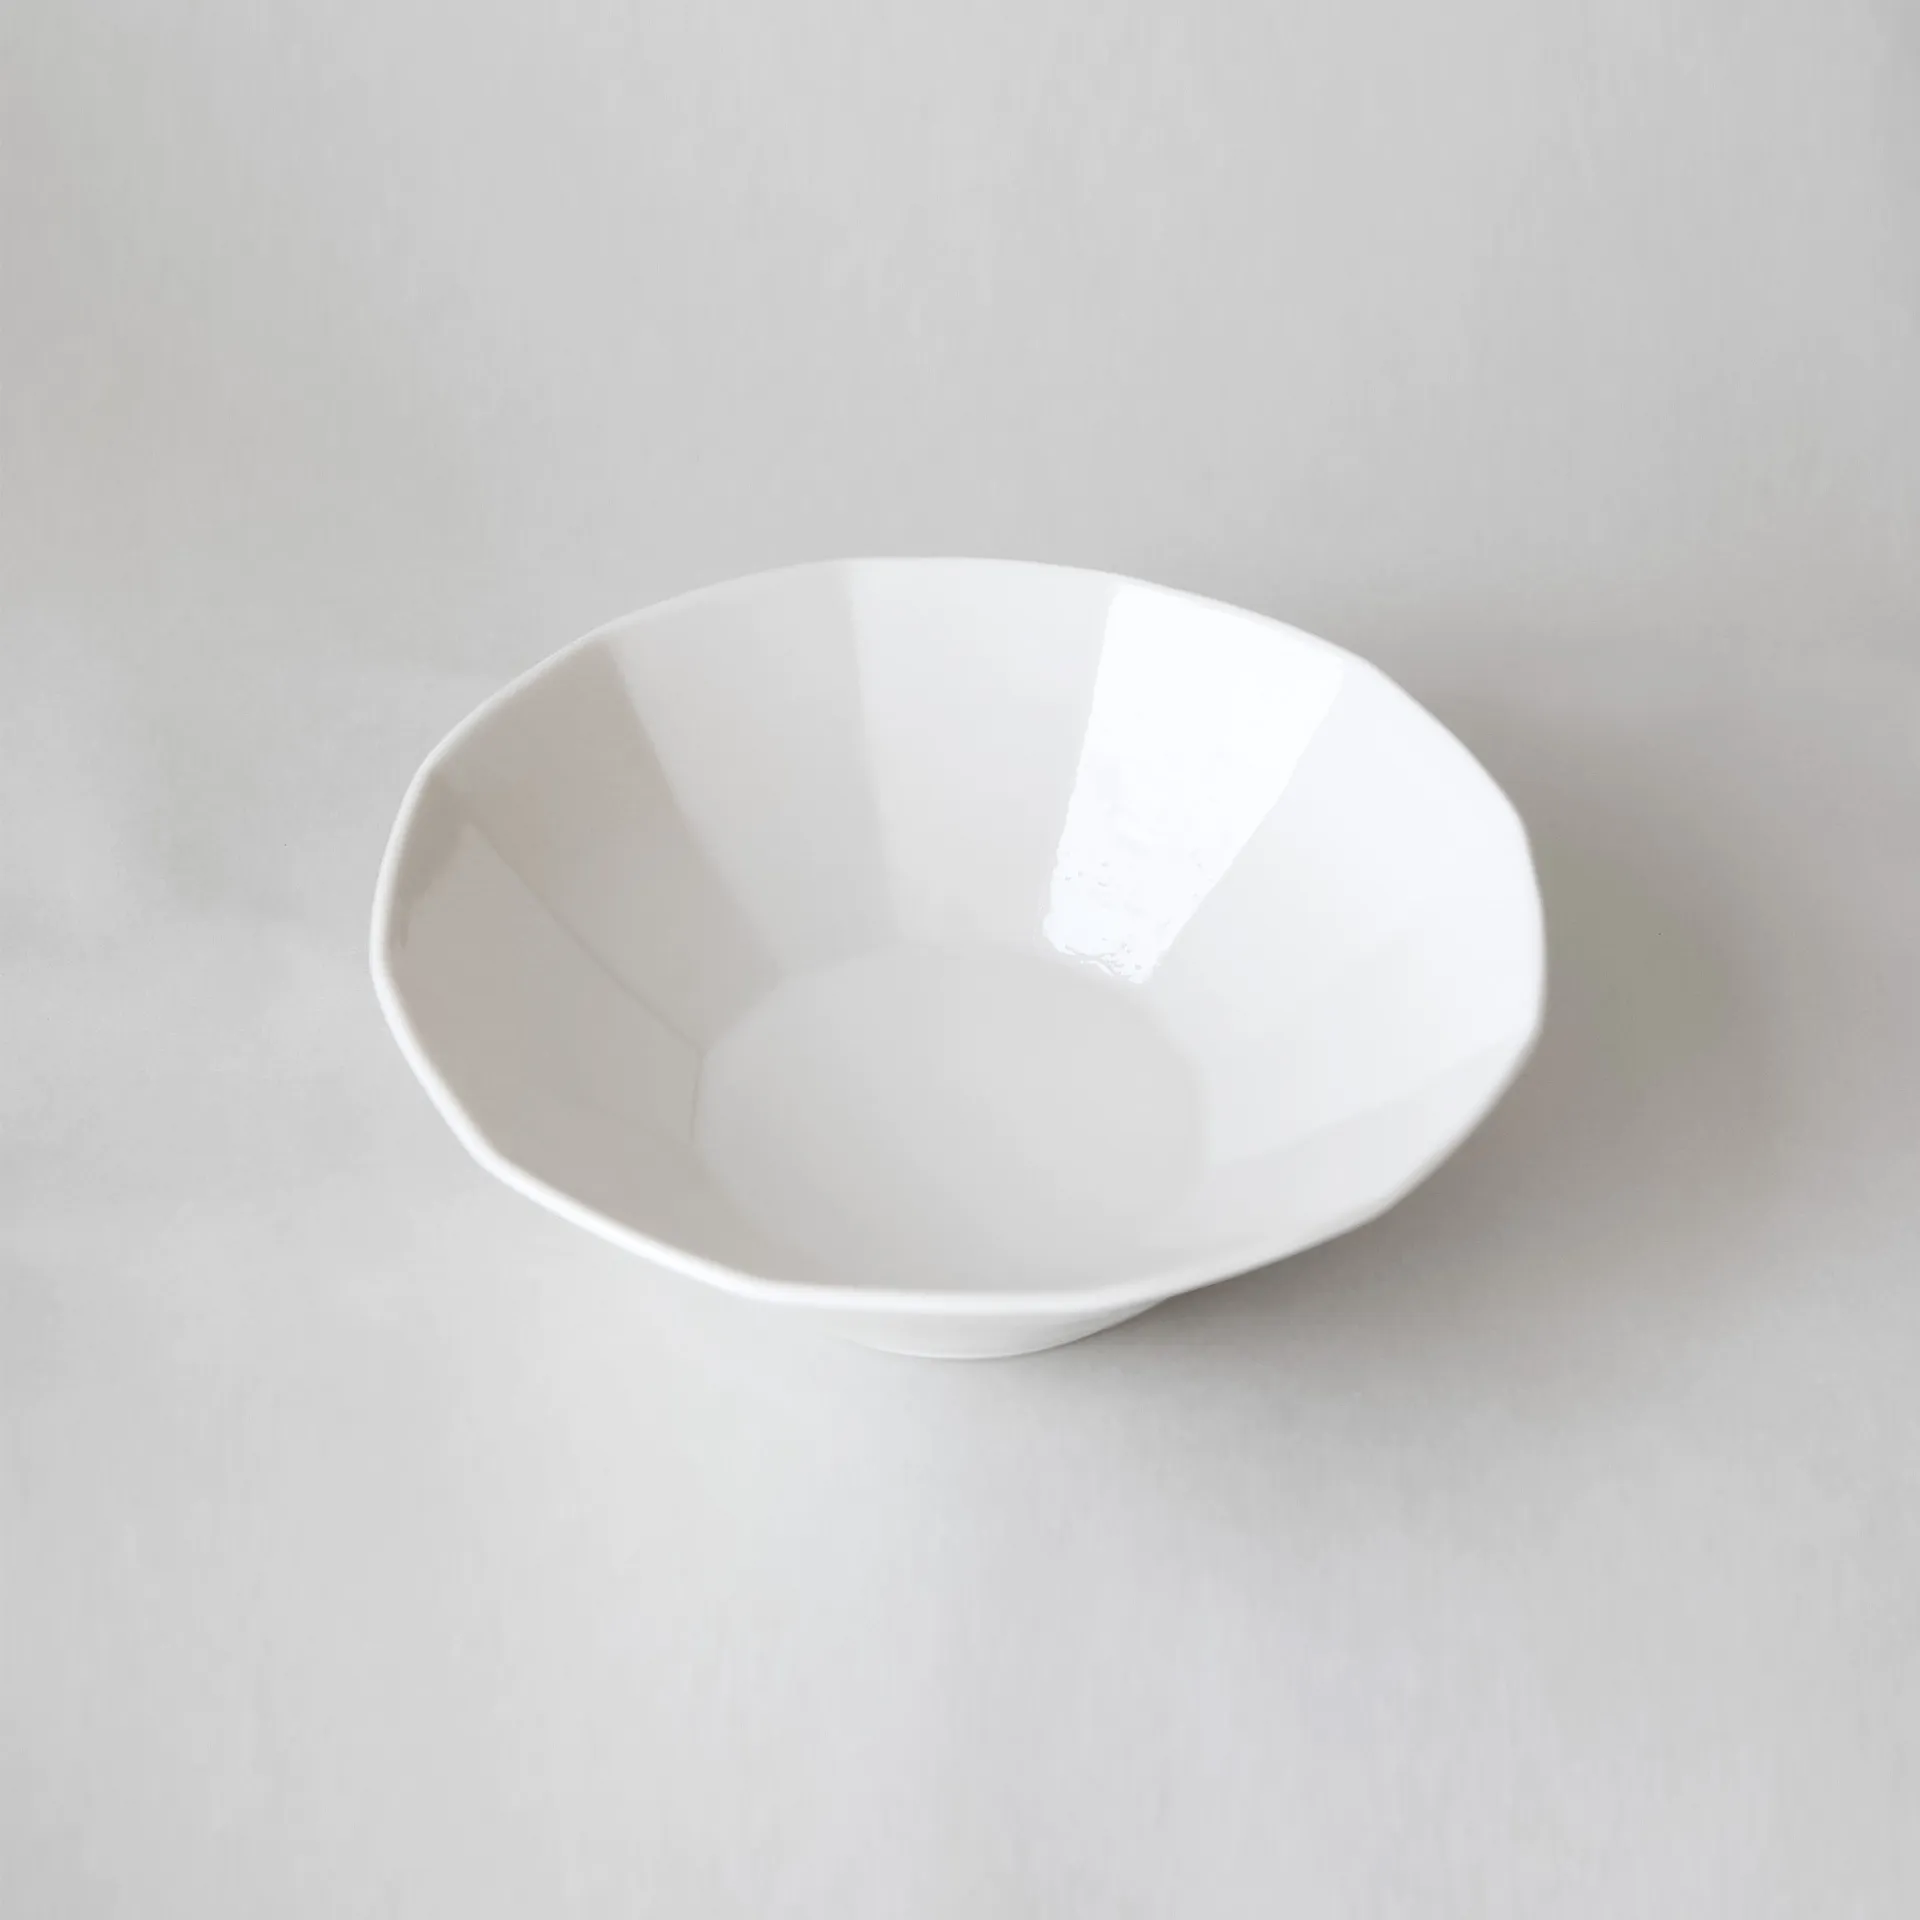 White porcelain cube bowl